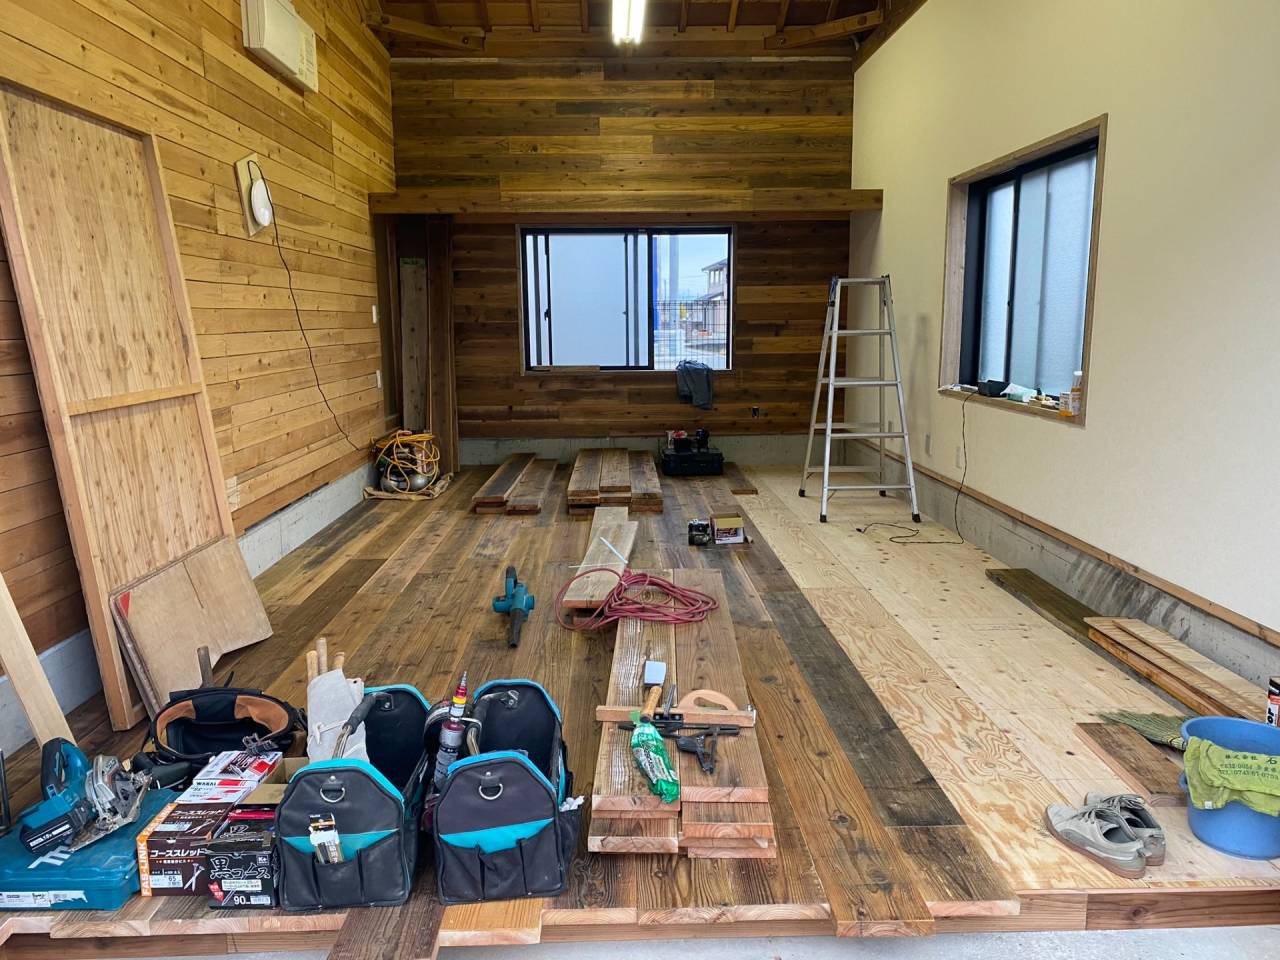 工事途中状況・壁クロス施工後床工事へと移ります。床の水平や不陸を調整し捨て張り合板施工後に足場板古材の床板を張っていきます。